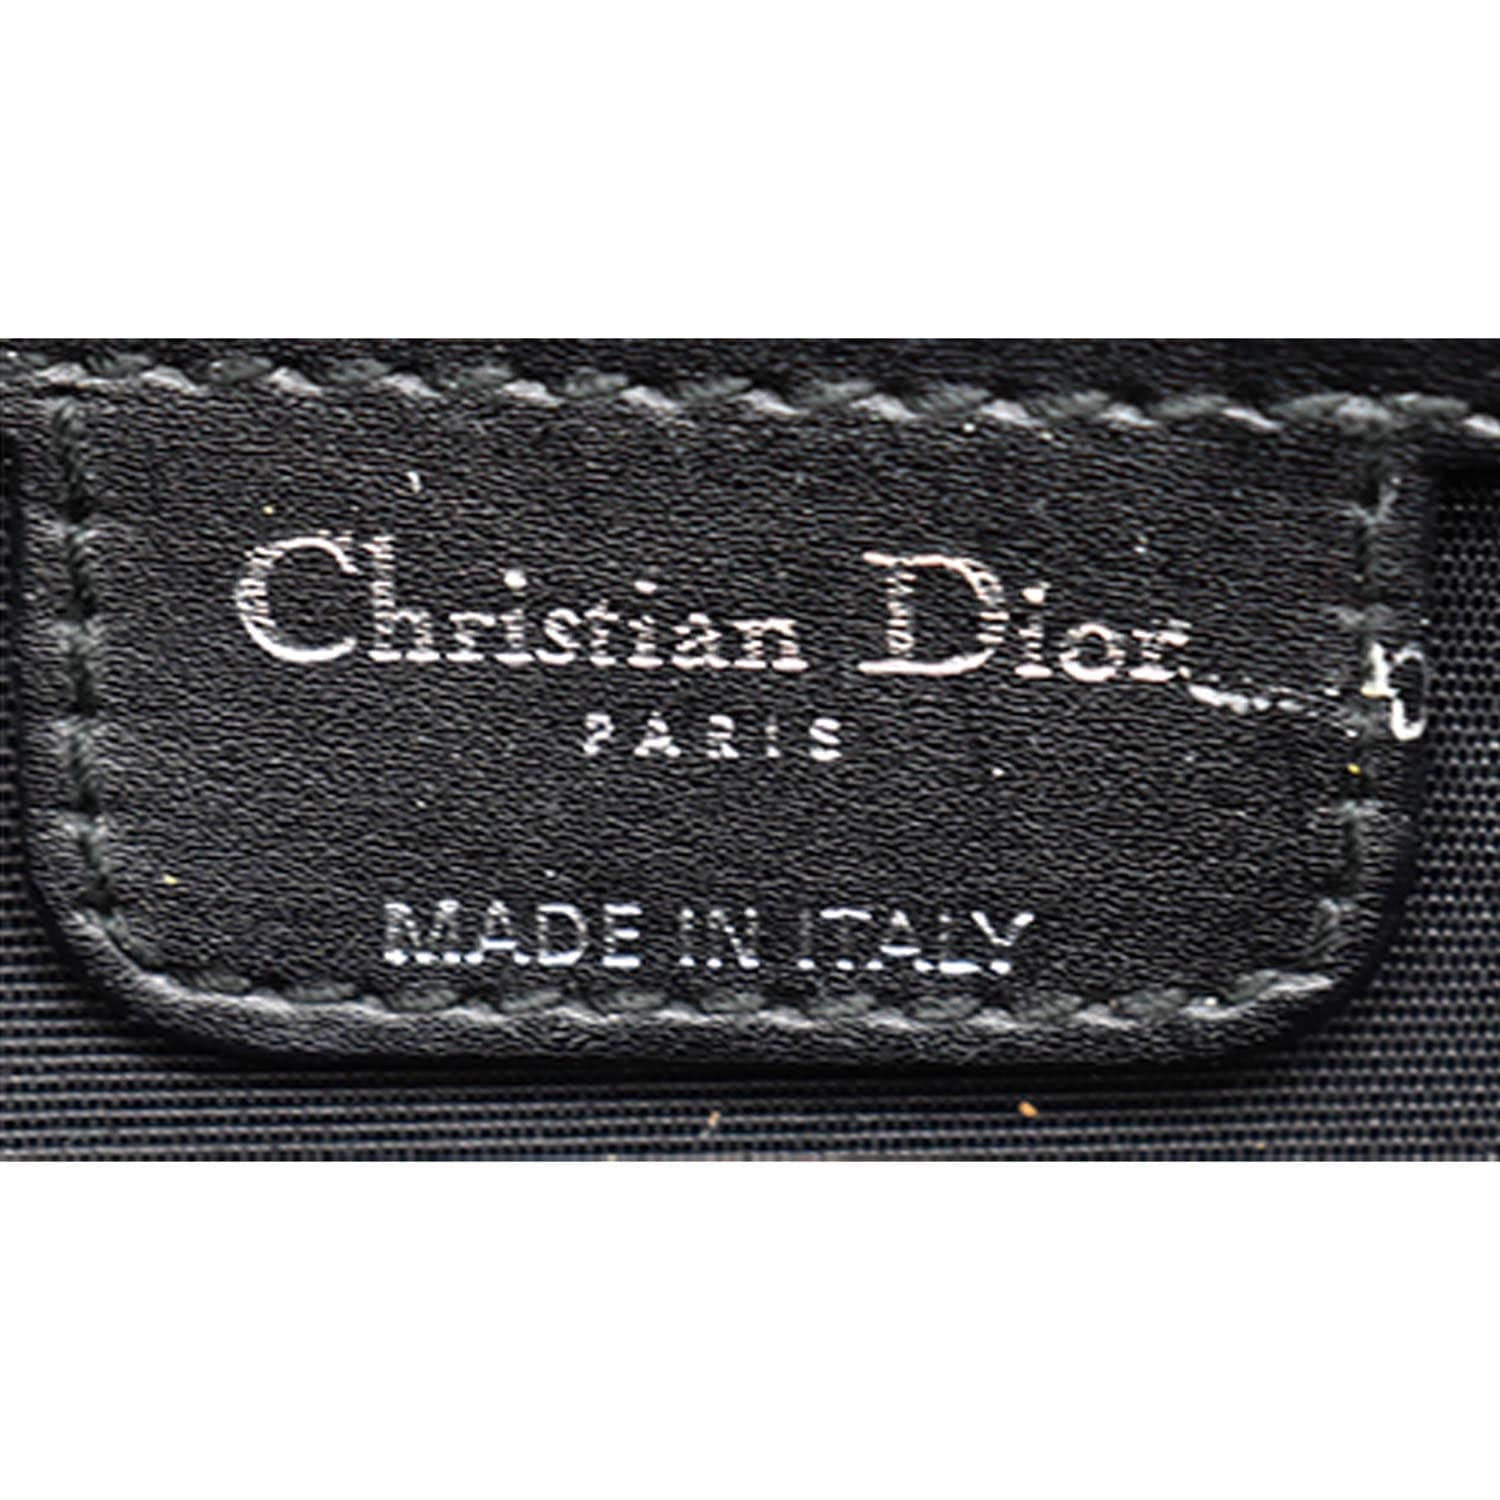 Christian Dior panarea Hand Bag Vintage rare 100&genuine